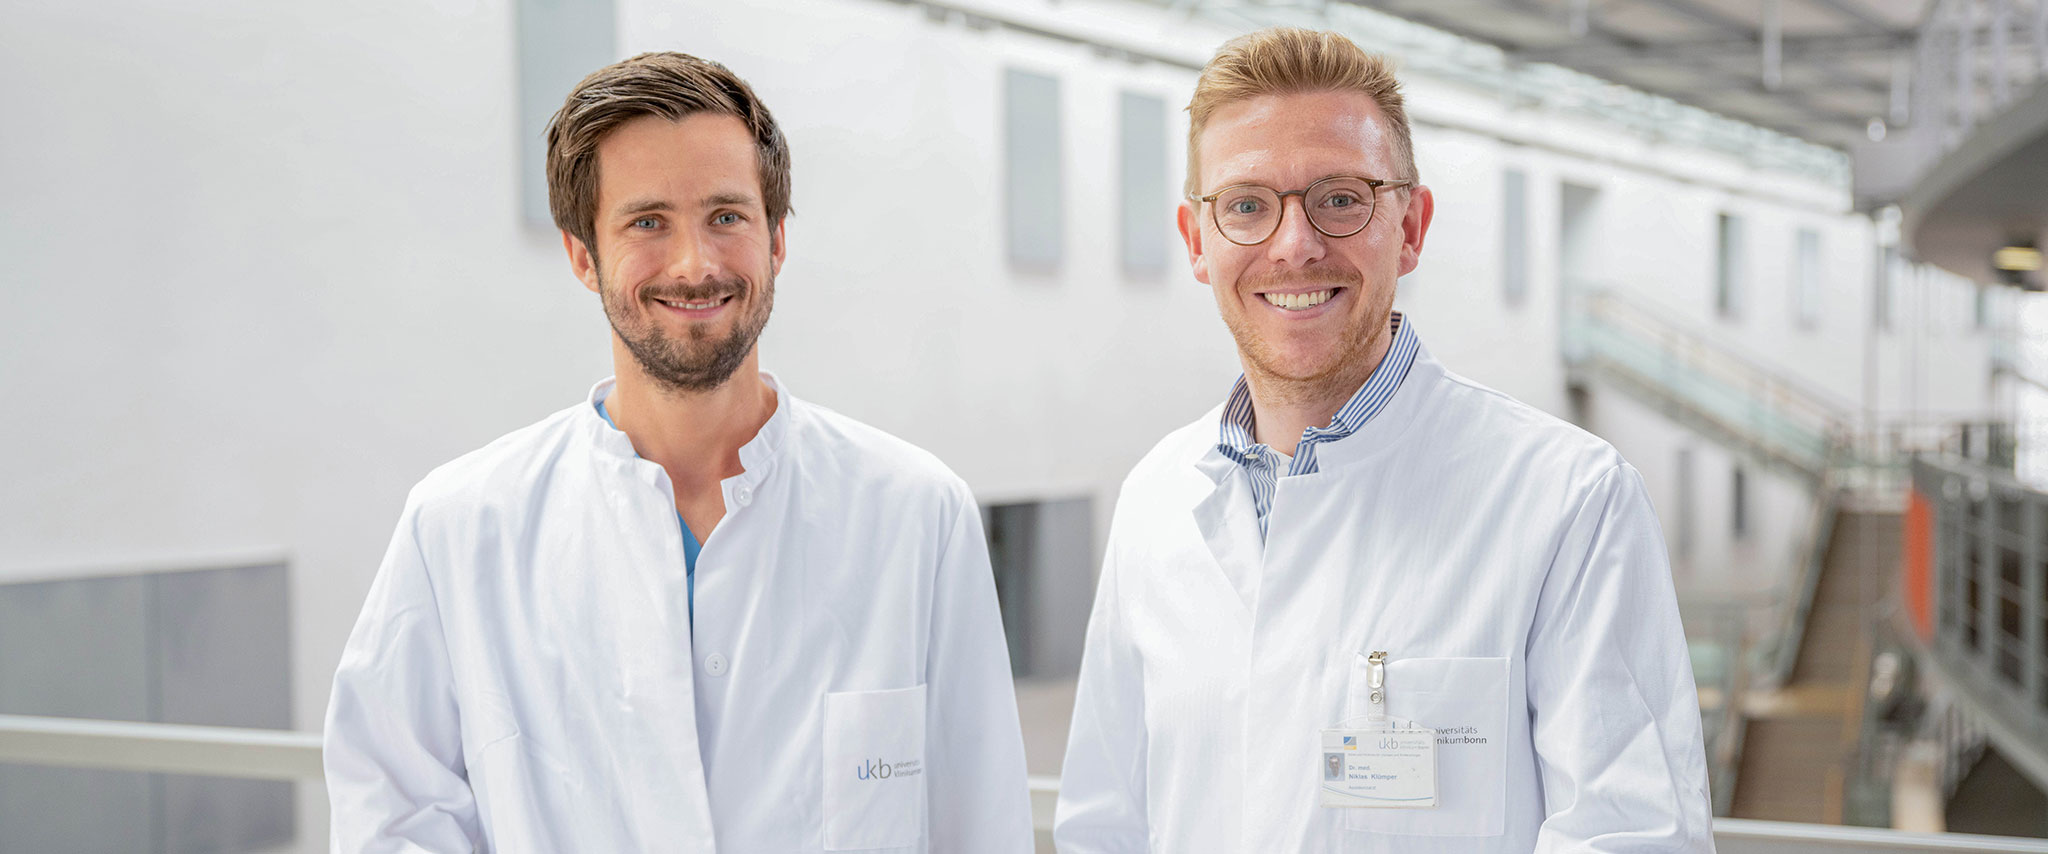 Studie des Universitätsklinikums Bonn verbessert die Vorhersage des Therapieansprechens bei Patient*innen mit metastasiertem Nierenzellkarzinom